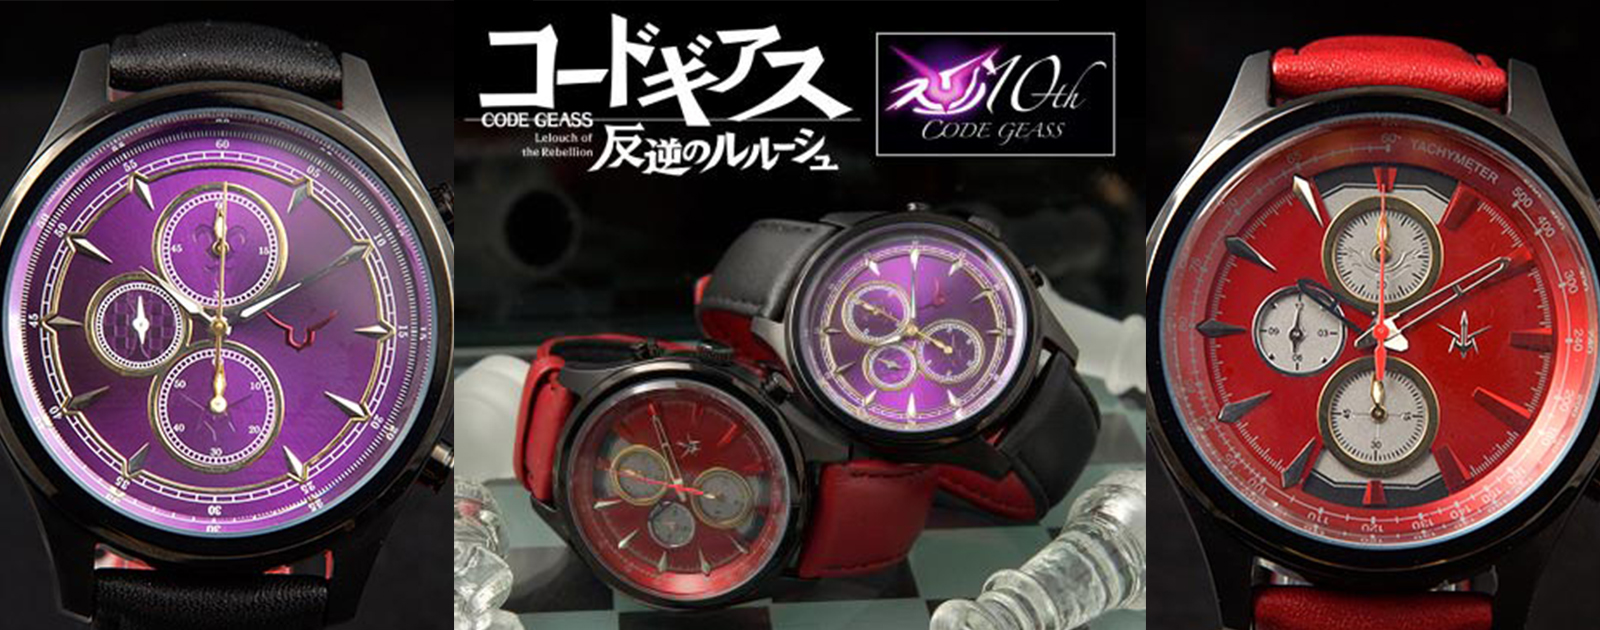 正規通販ショップ情報 コードギアス 反逆のルルーシュ × SEIKO コラボレーション ウォッチ 腕時計(アナログ)